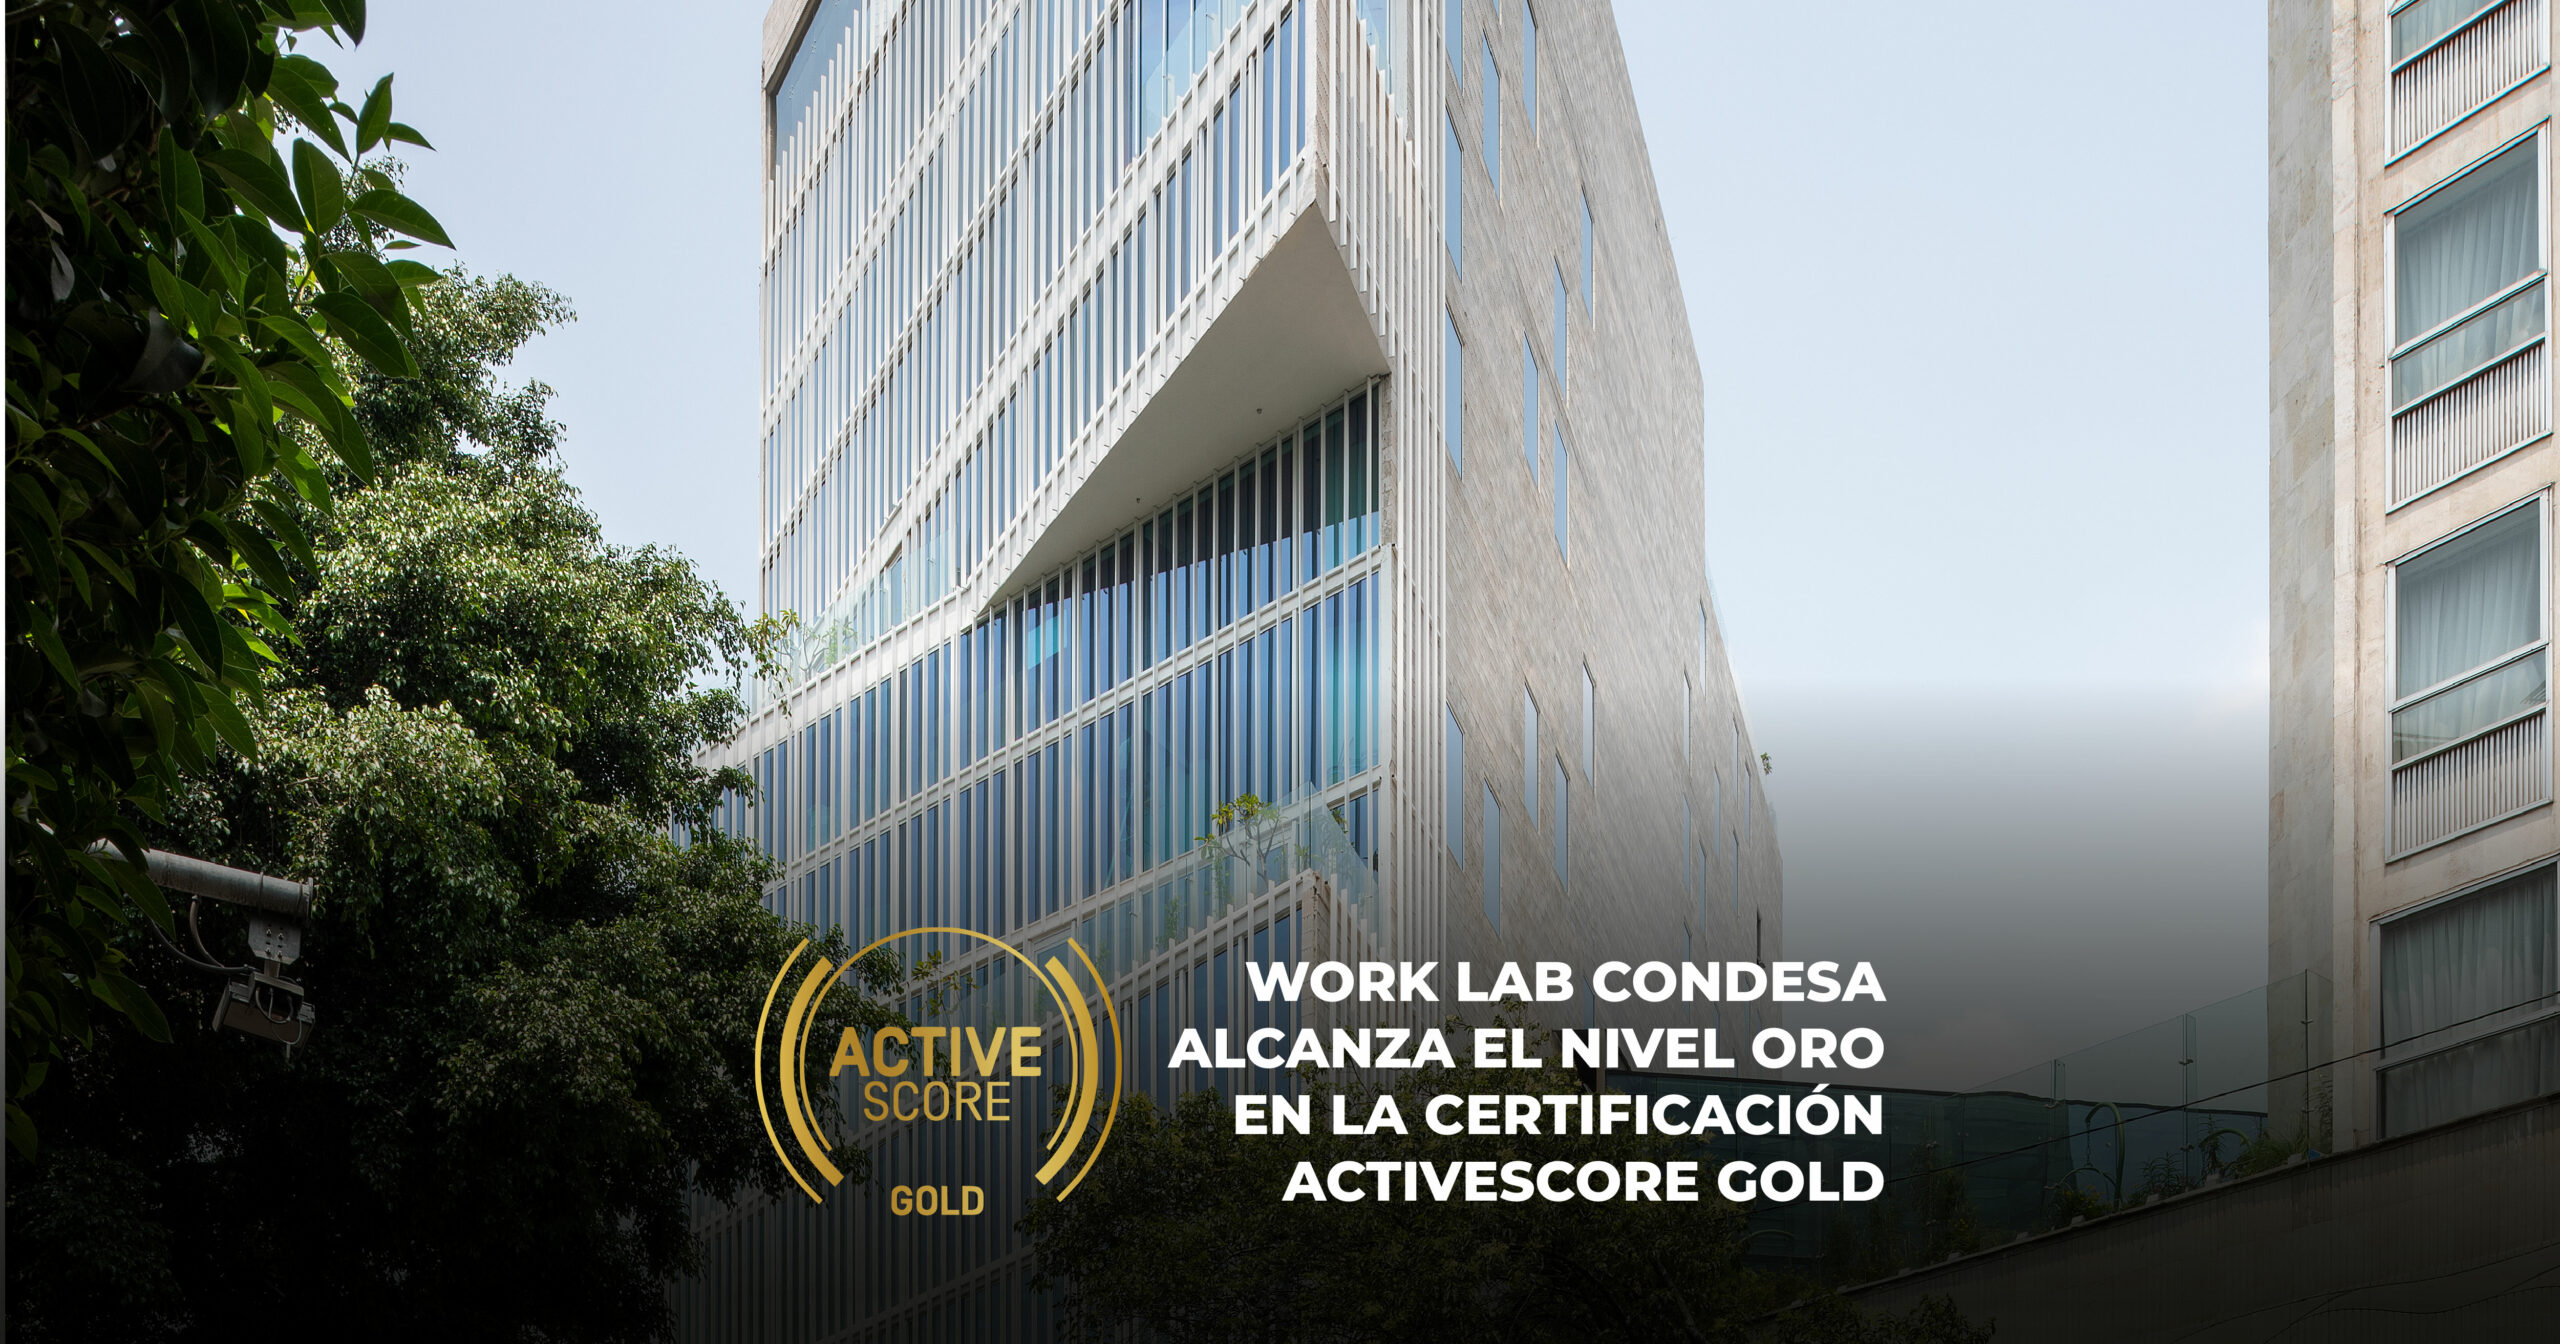 Work Lab Condesa alcanza el nivel Oro en la certificación ActiveScore Gold.